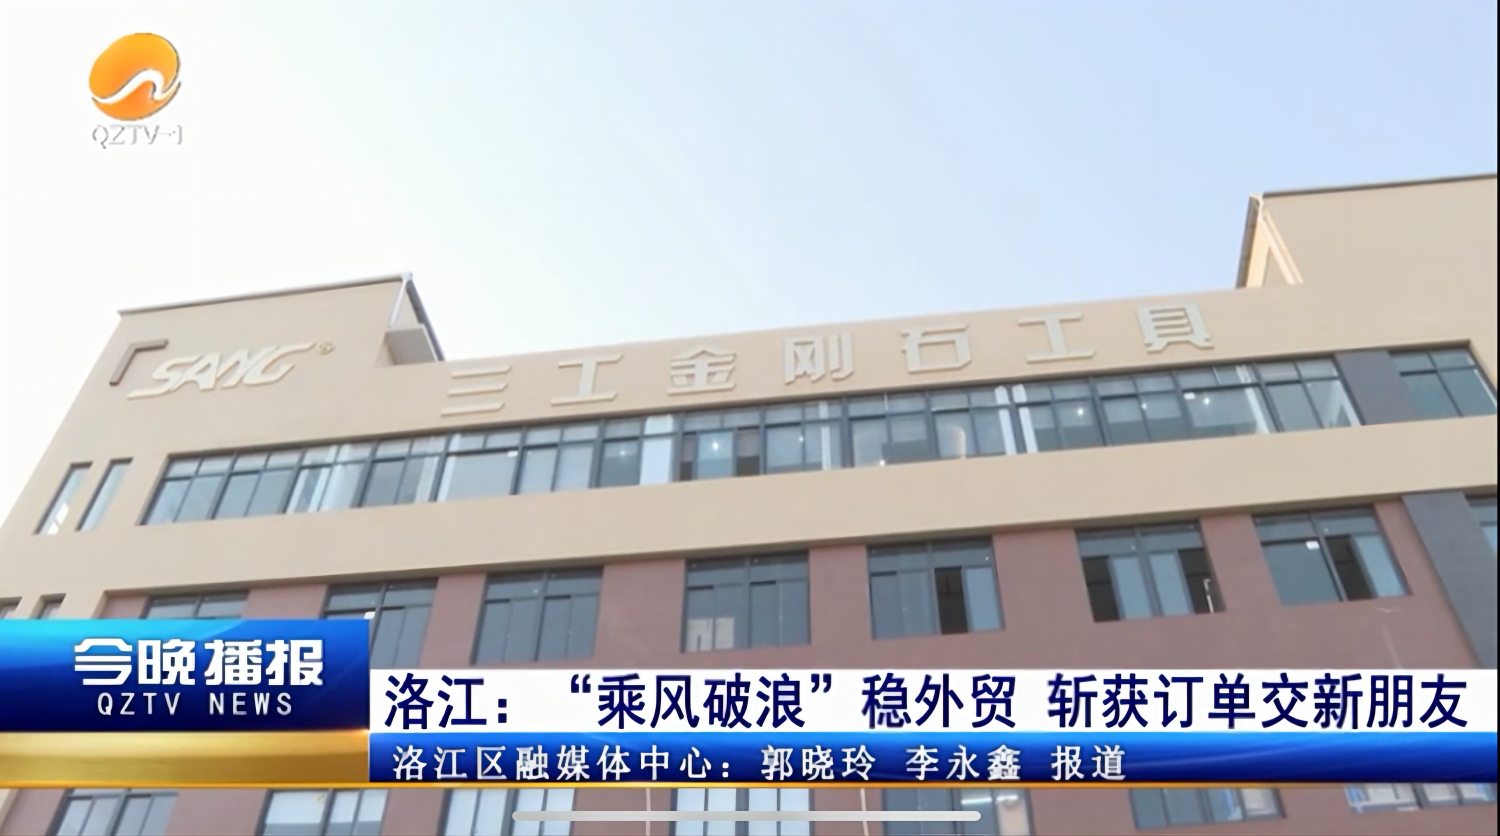 Quanzhou Sang Diamond Tools zostało zgłoszone przez The People's Daily i QZTV